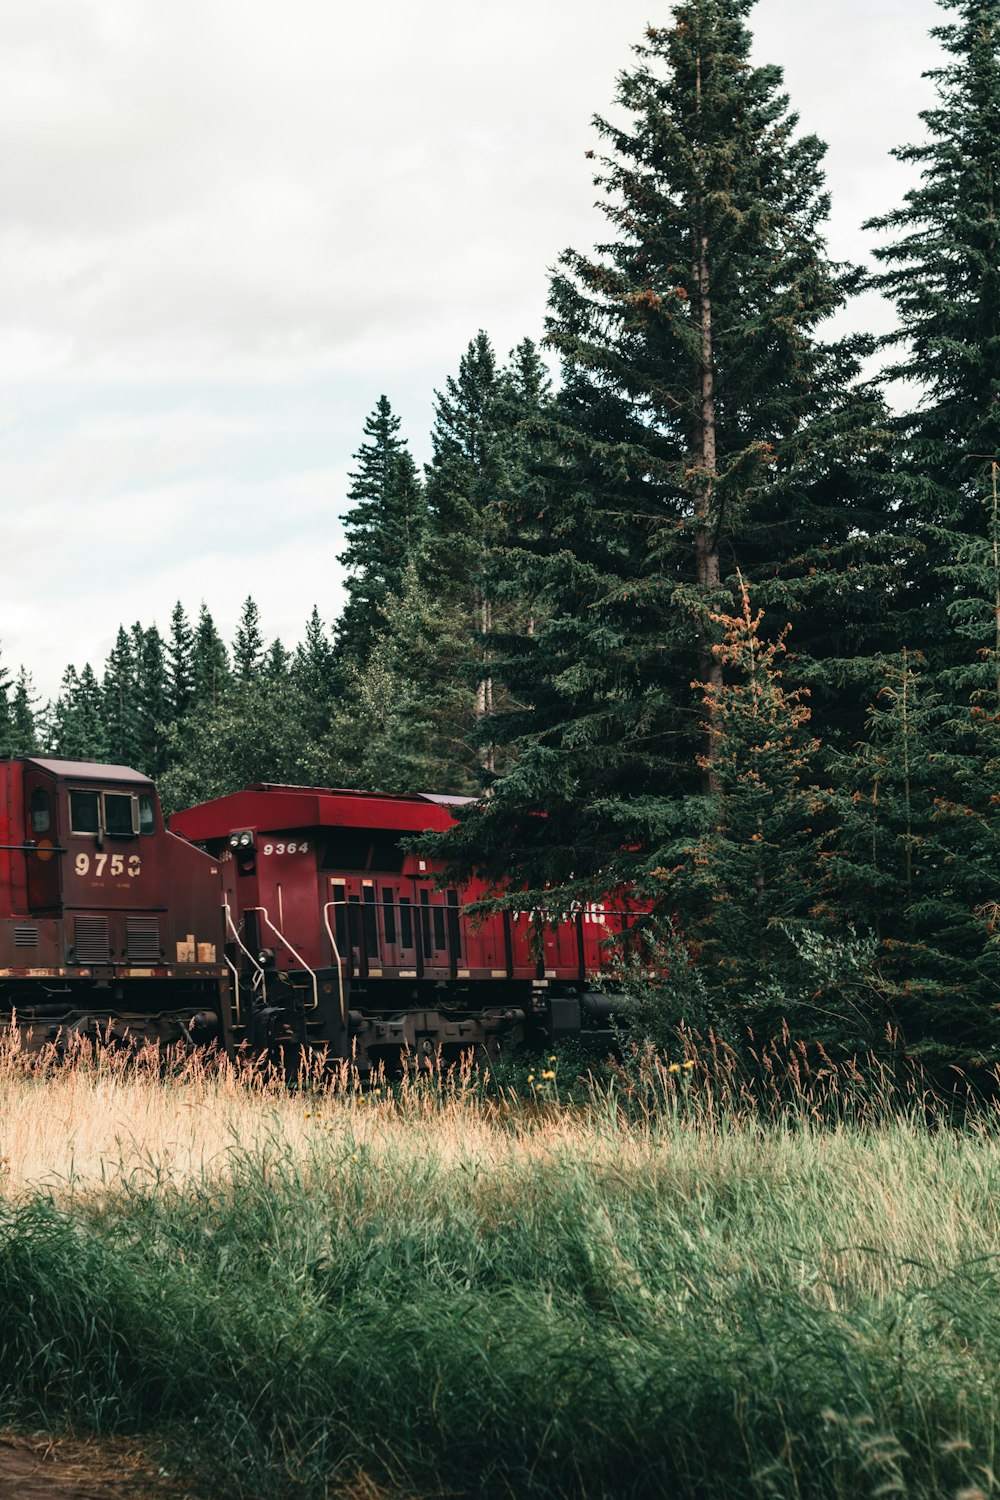 Un treno rosso che viaggia attraverso una lussureggiante foresta verde